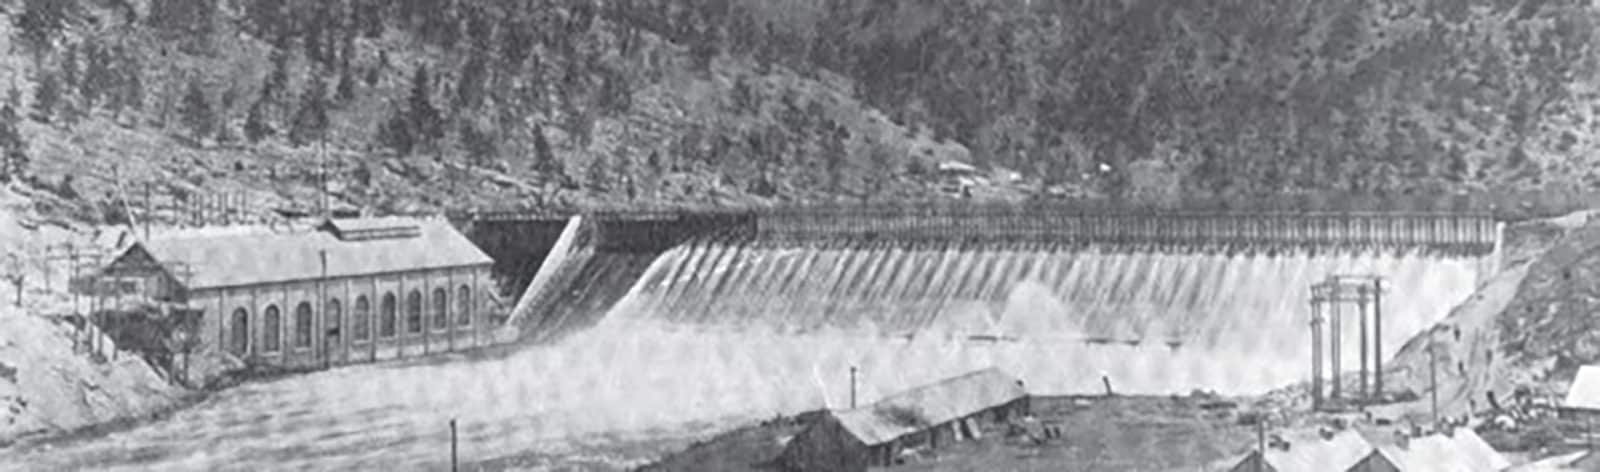 Hauser Dam